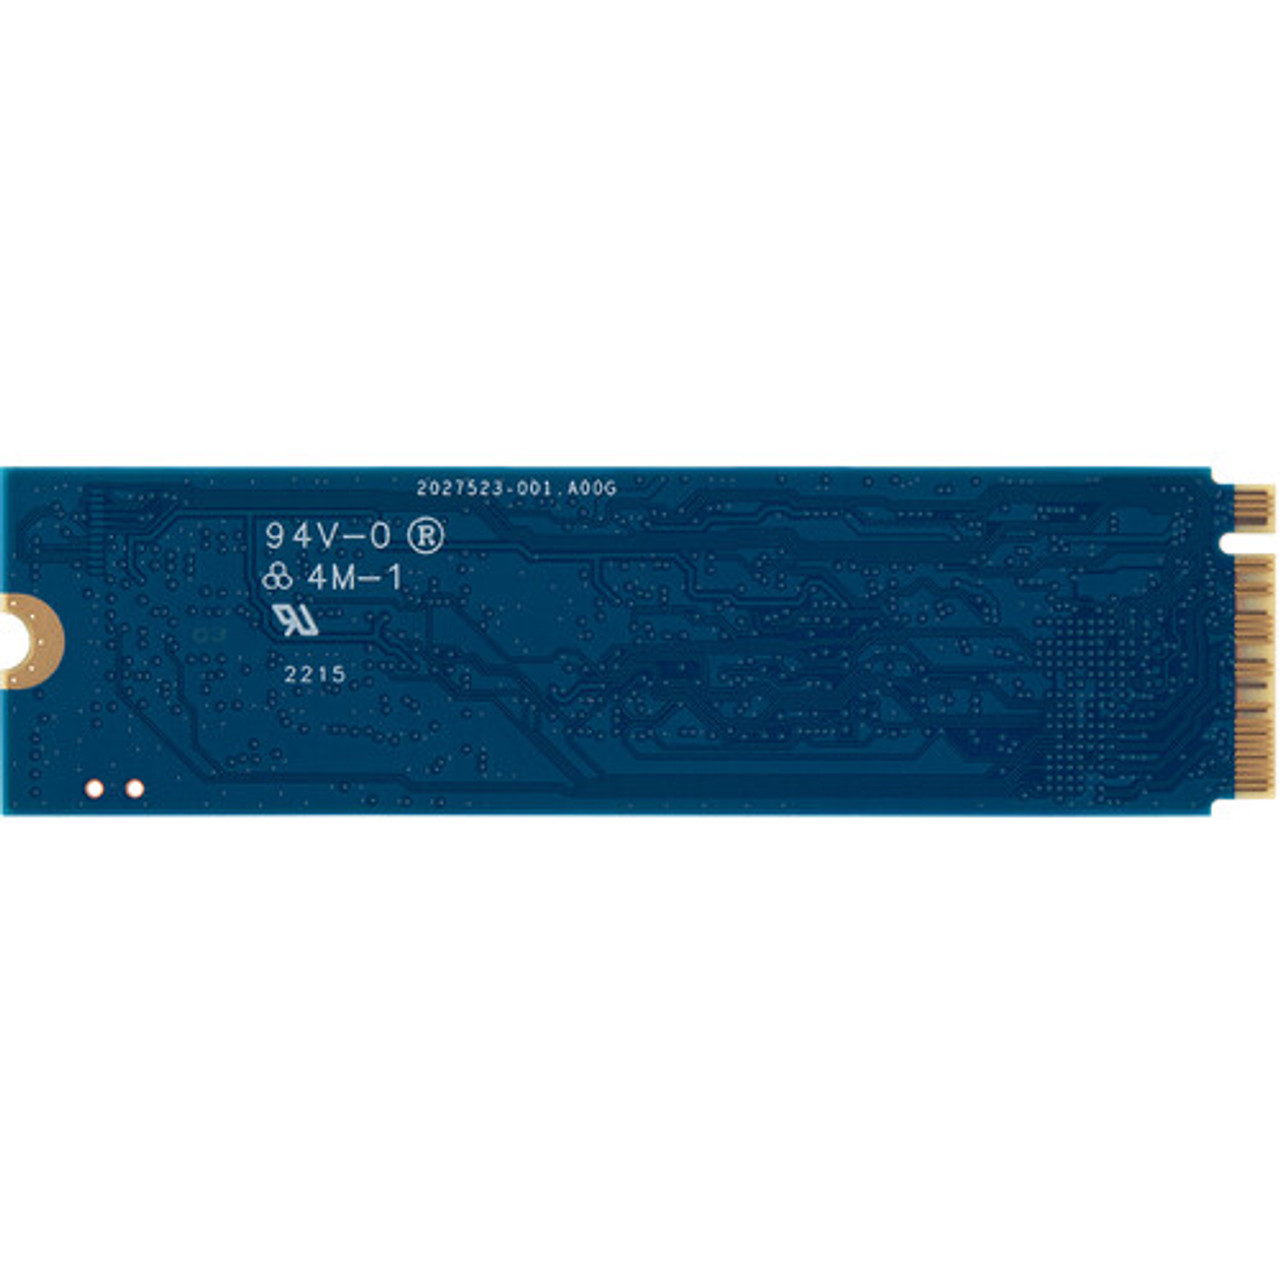 KINGSTON NV2 250GB SSD M.2 NVME